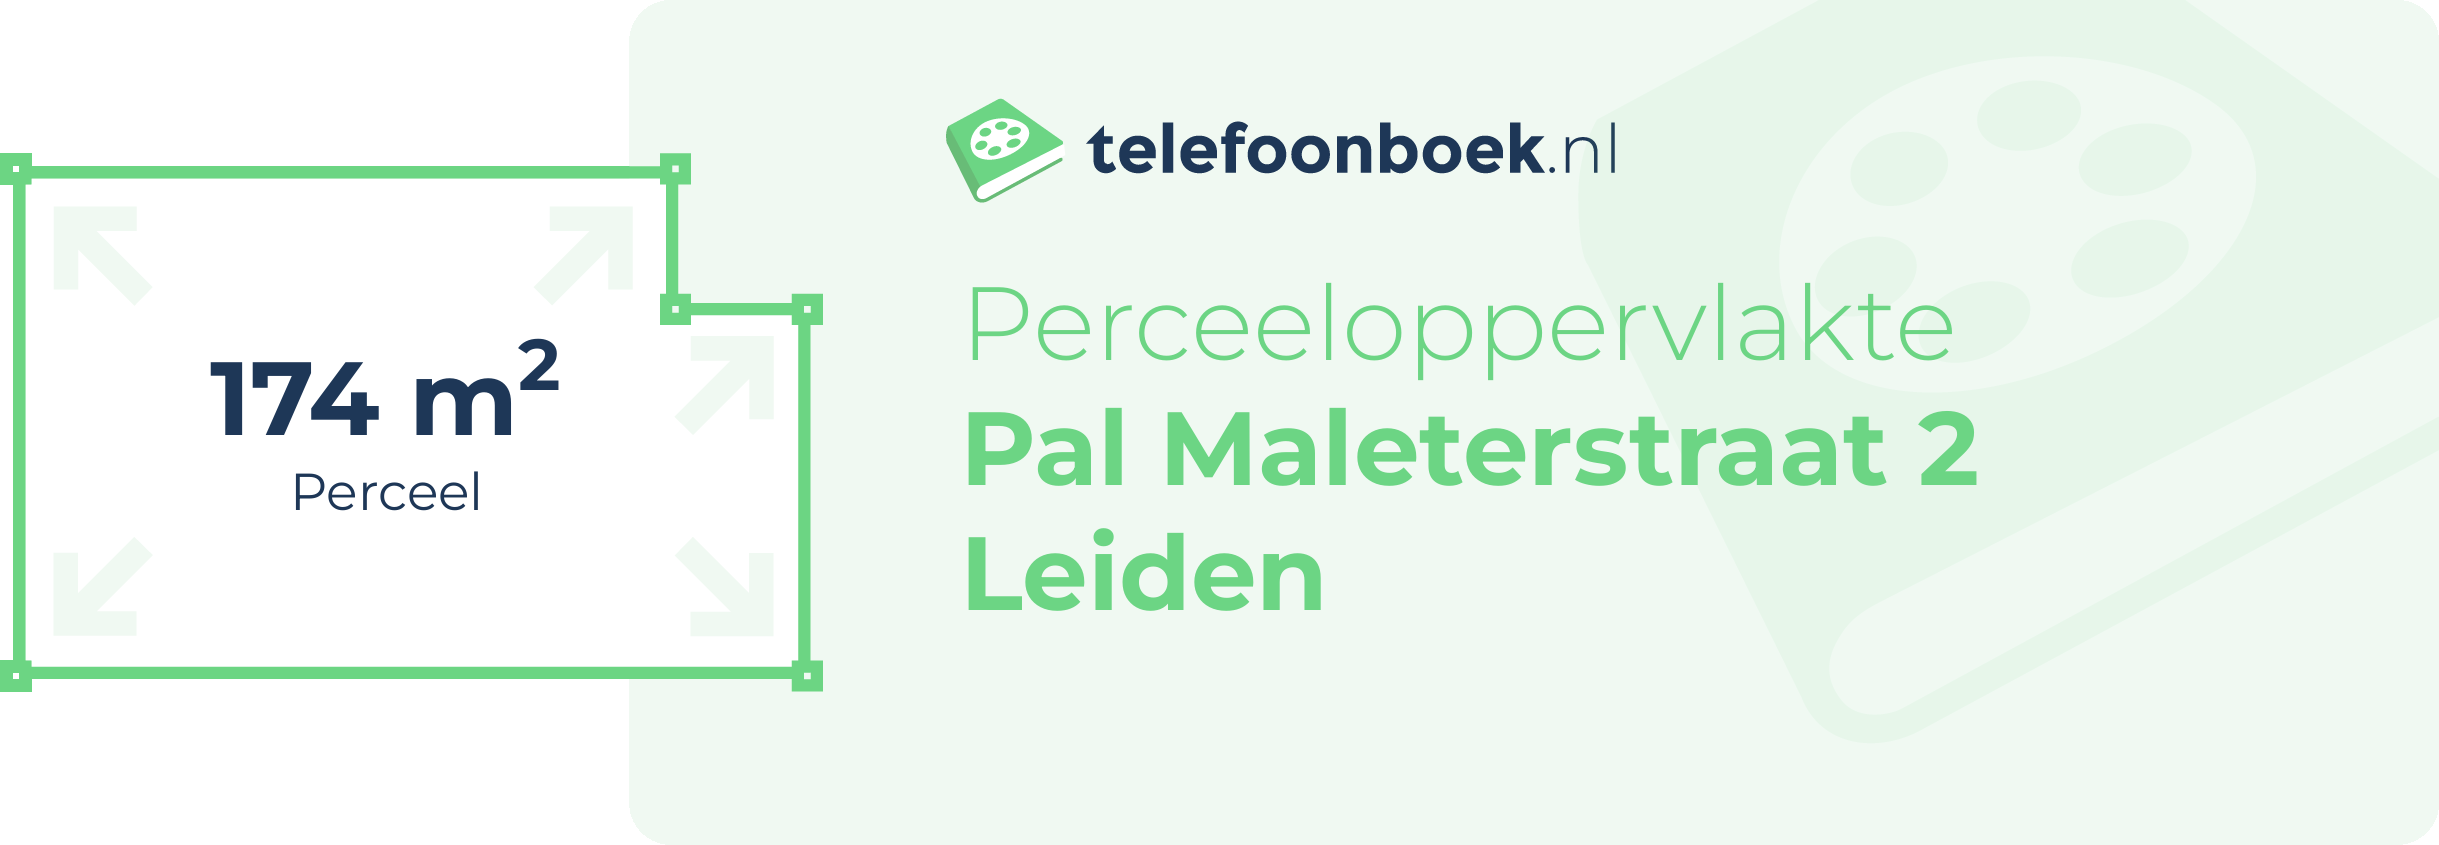 Perceeloppervlakte Pal Maleterstraat 2 Leiden